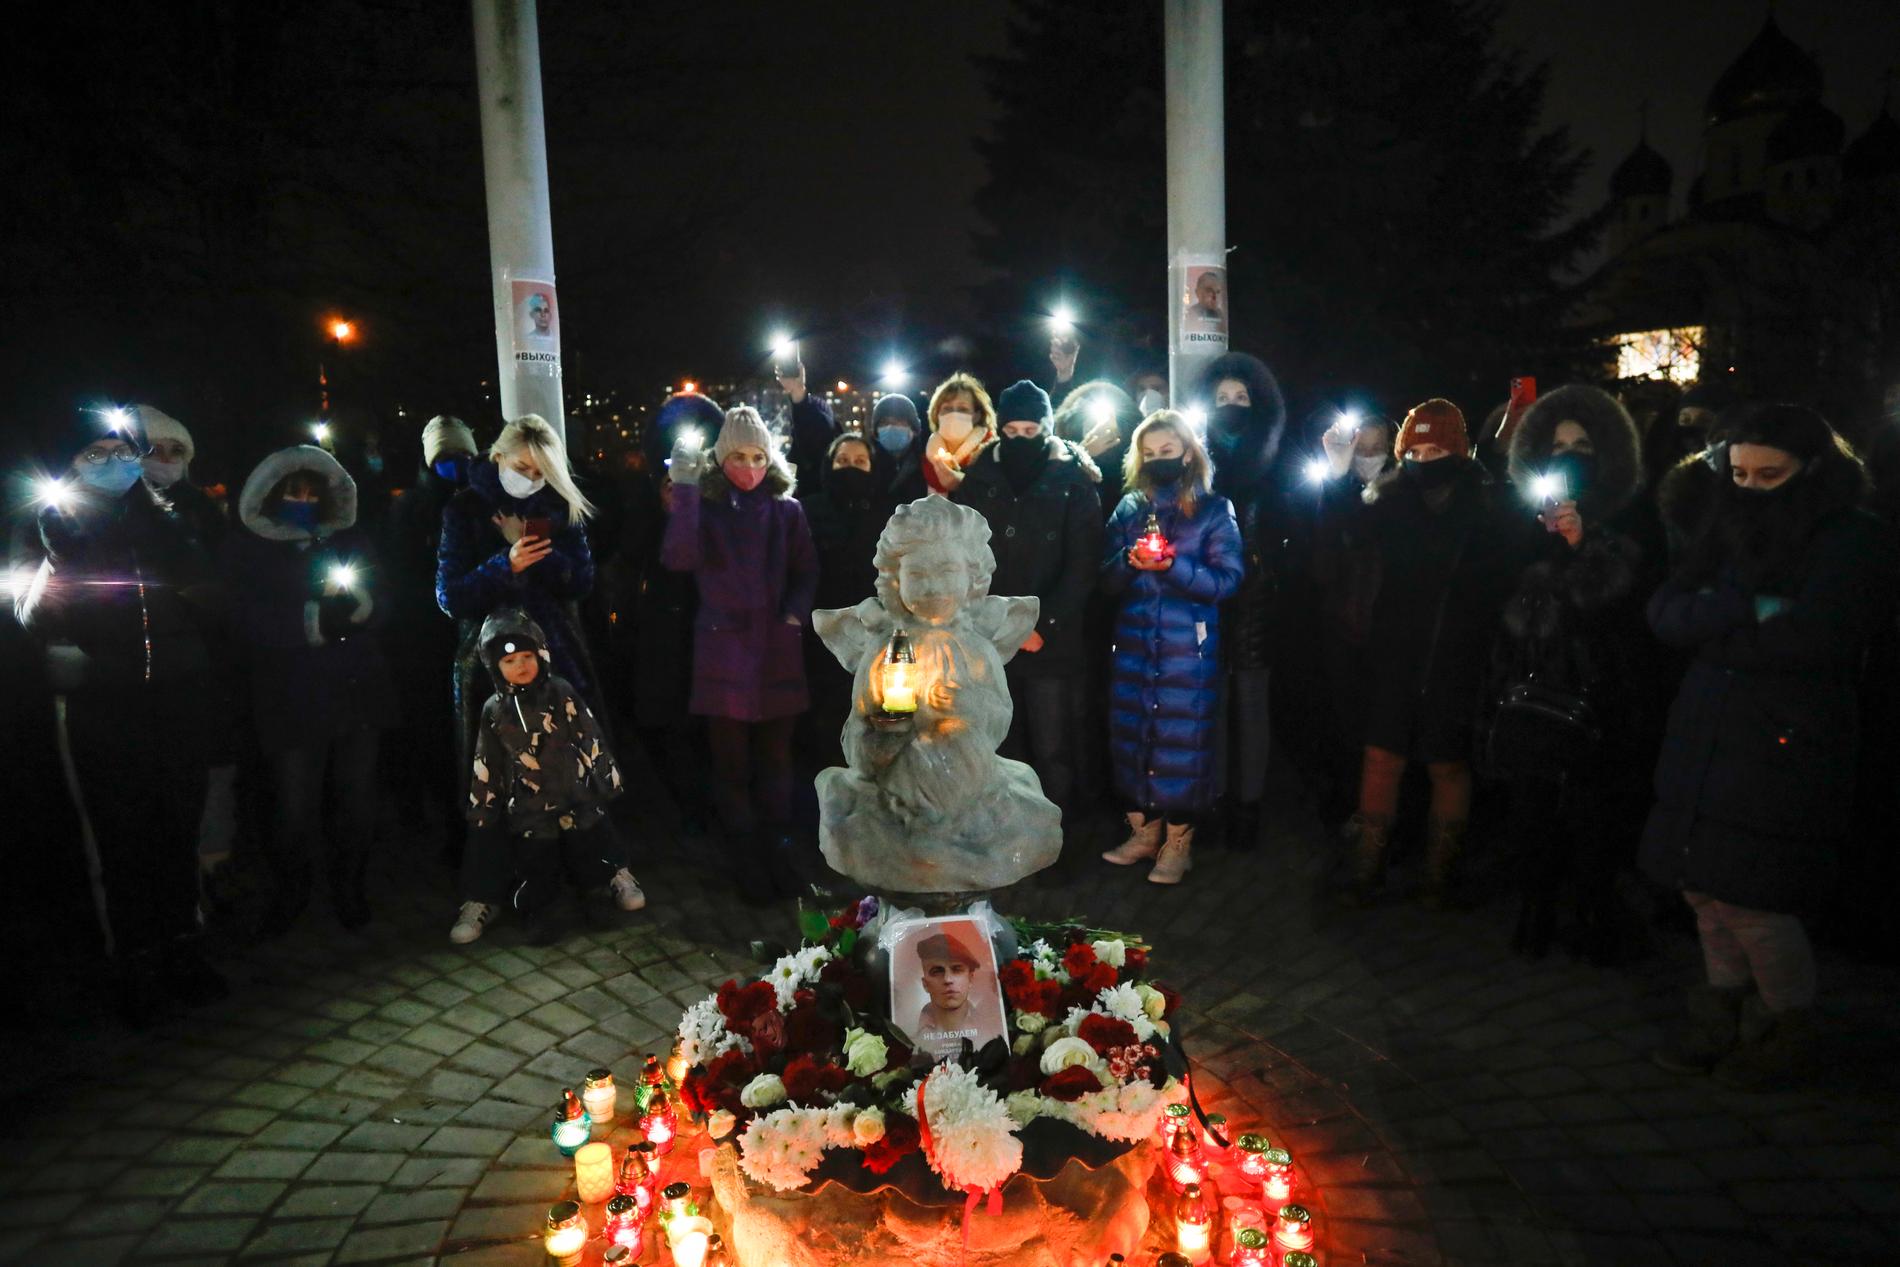 Minnet av den oppositionelle aktivisten Roman Bondarenko högtidlighålls i Minsk den 21 december, då det hade gått 40 dagar sedan han dödades. Arkivbild.